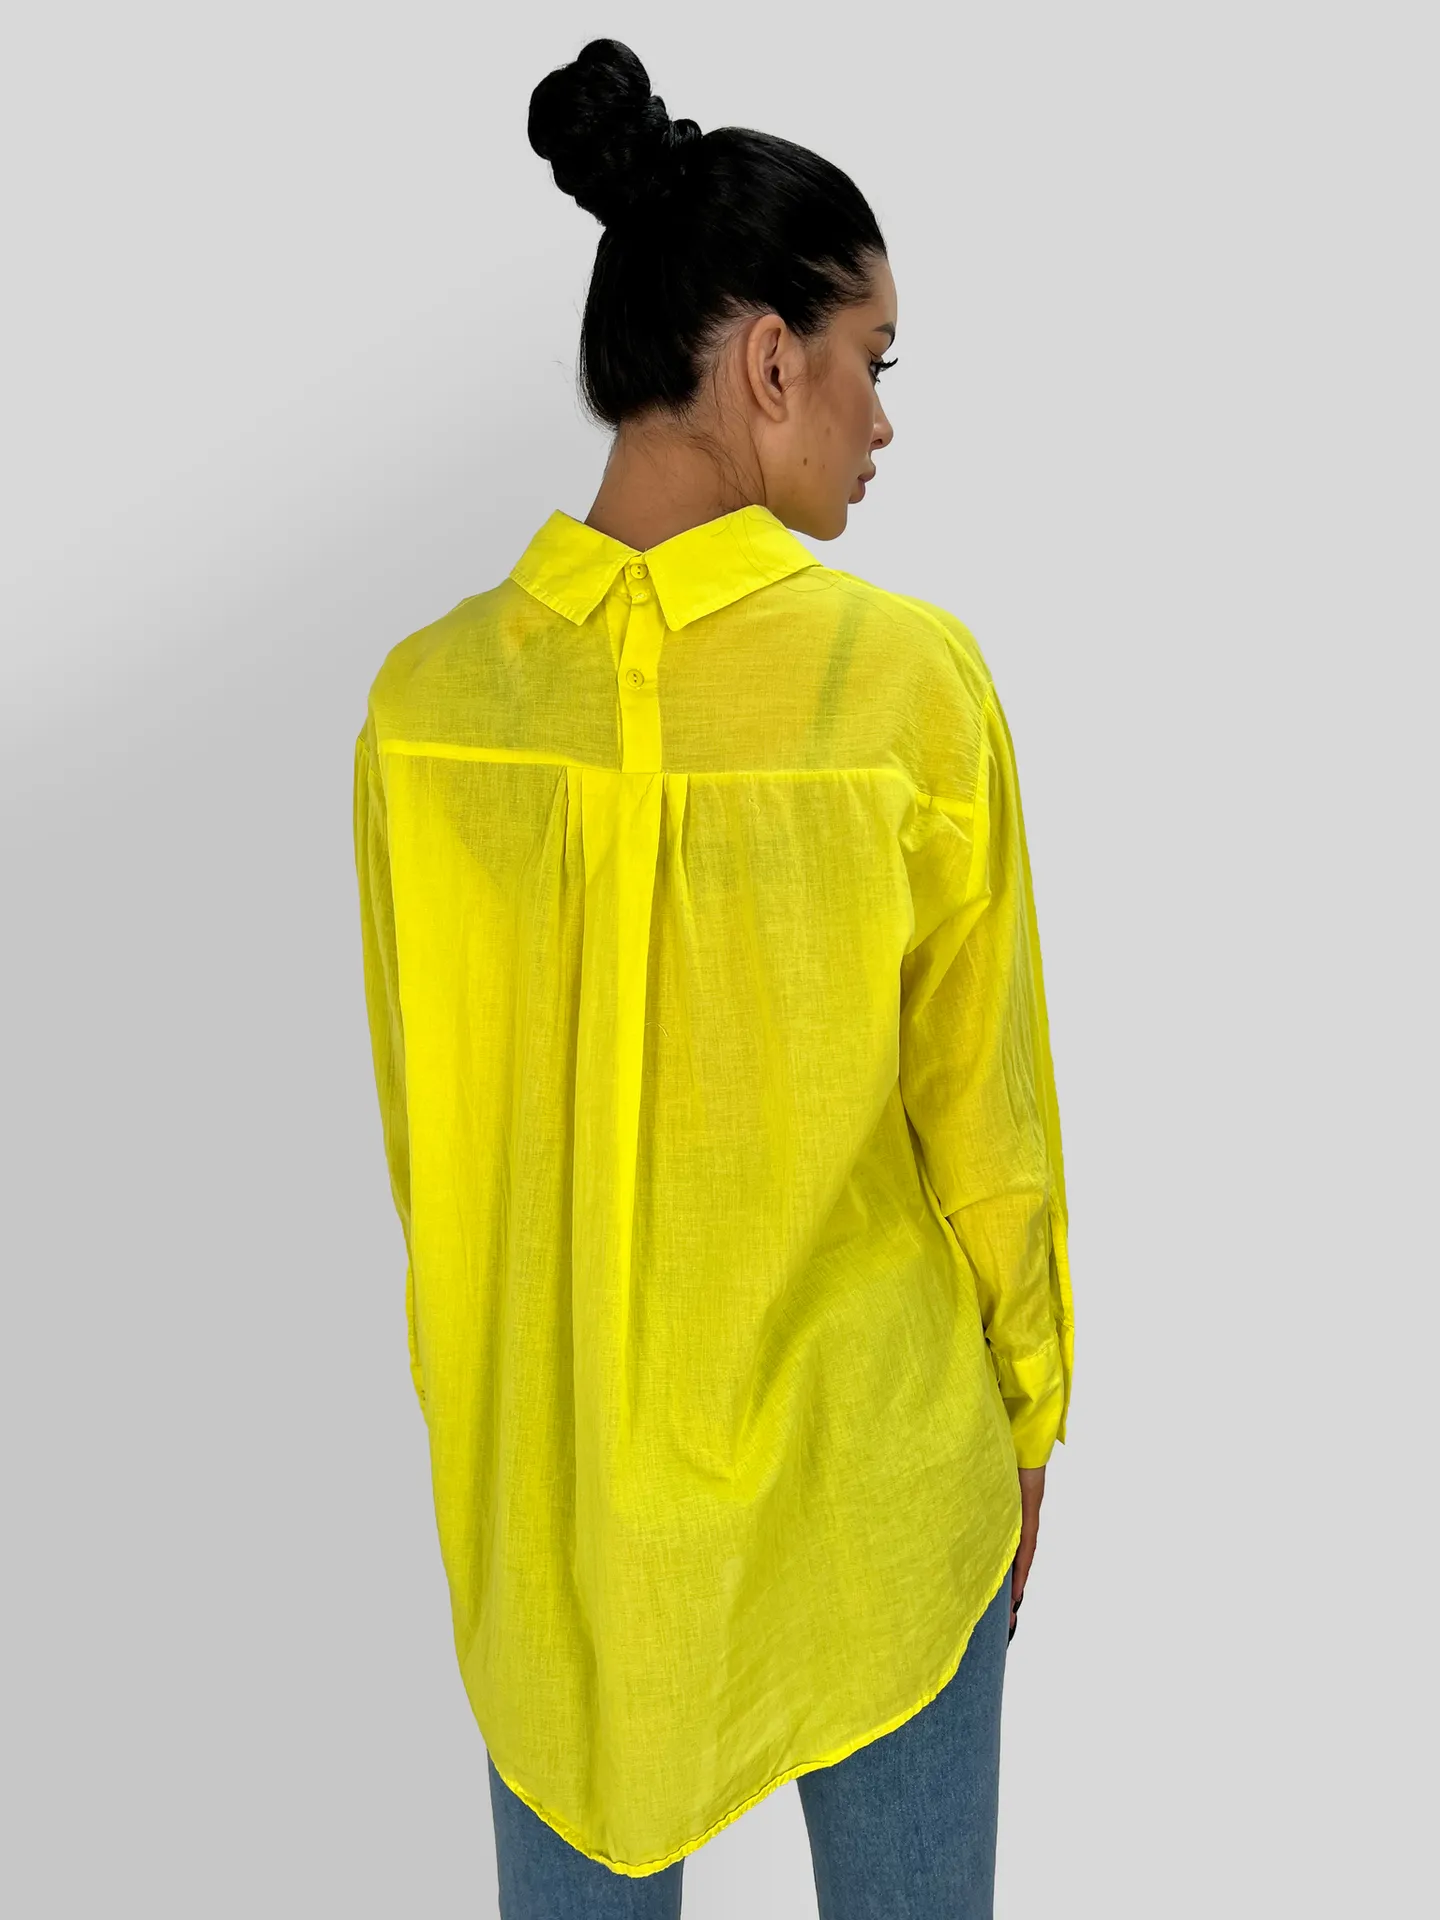 Рубашка Esterro Ragazza 4206 удлиненная с одним карманом спереди купить